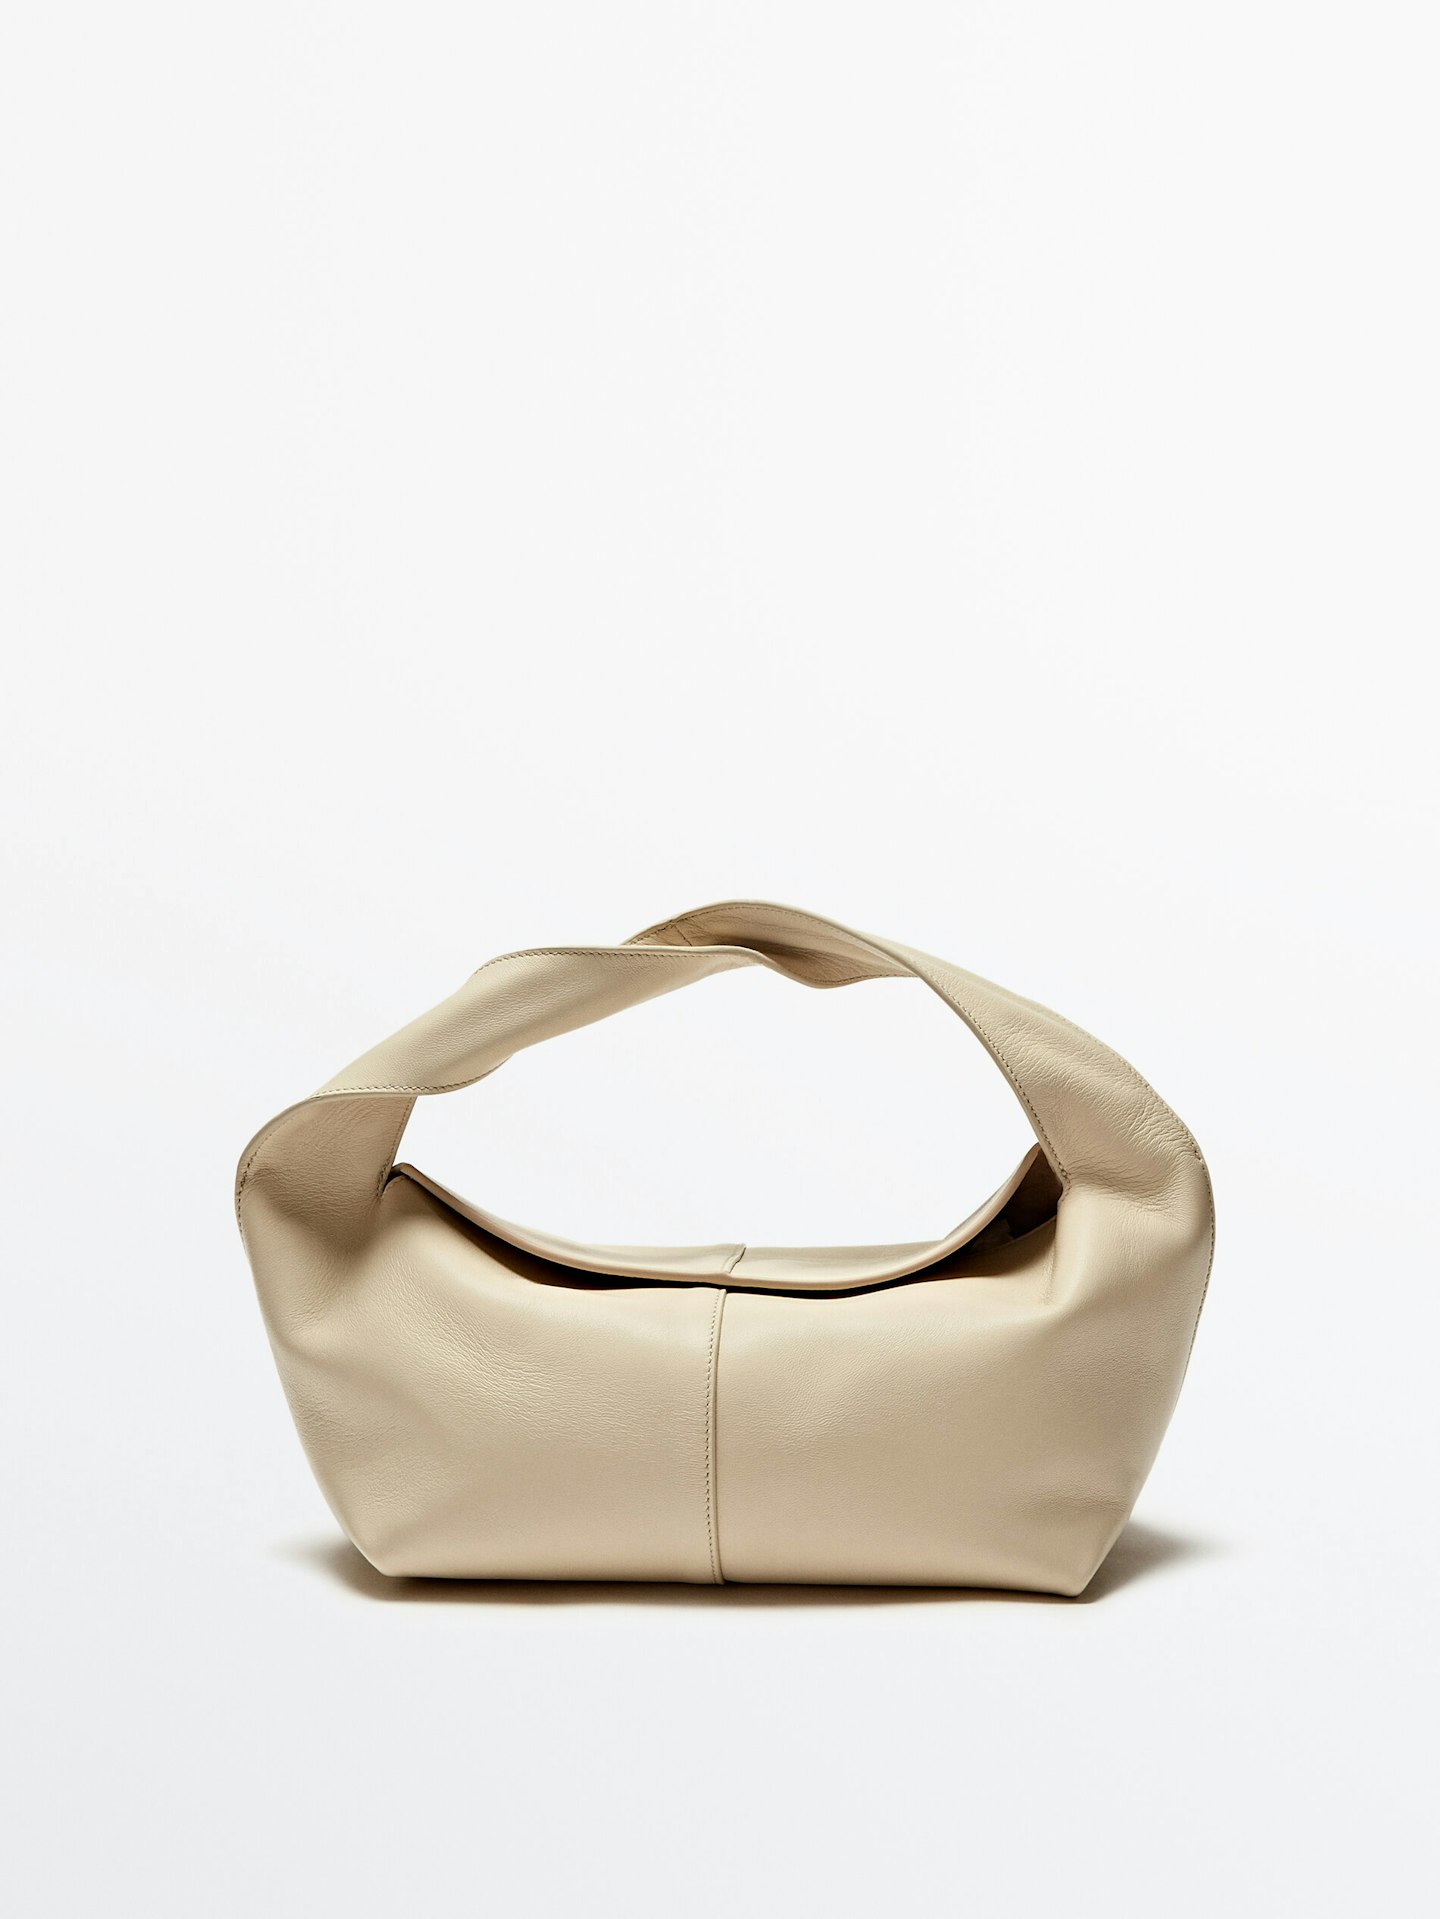 Massimo Dutti, Nappa Leather Croissant Bag